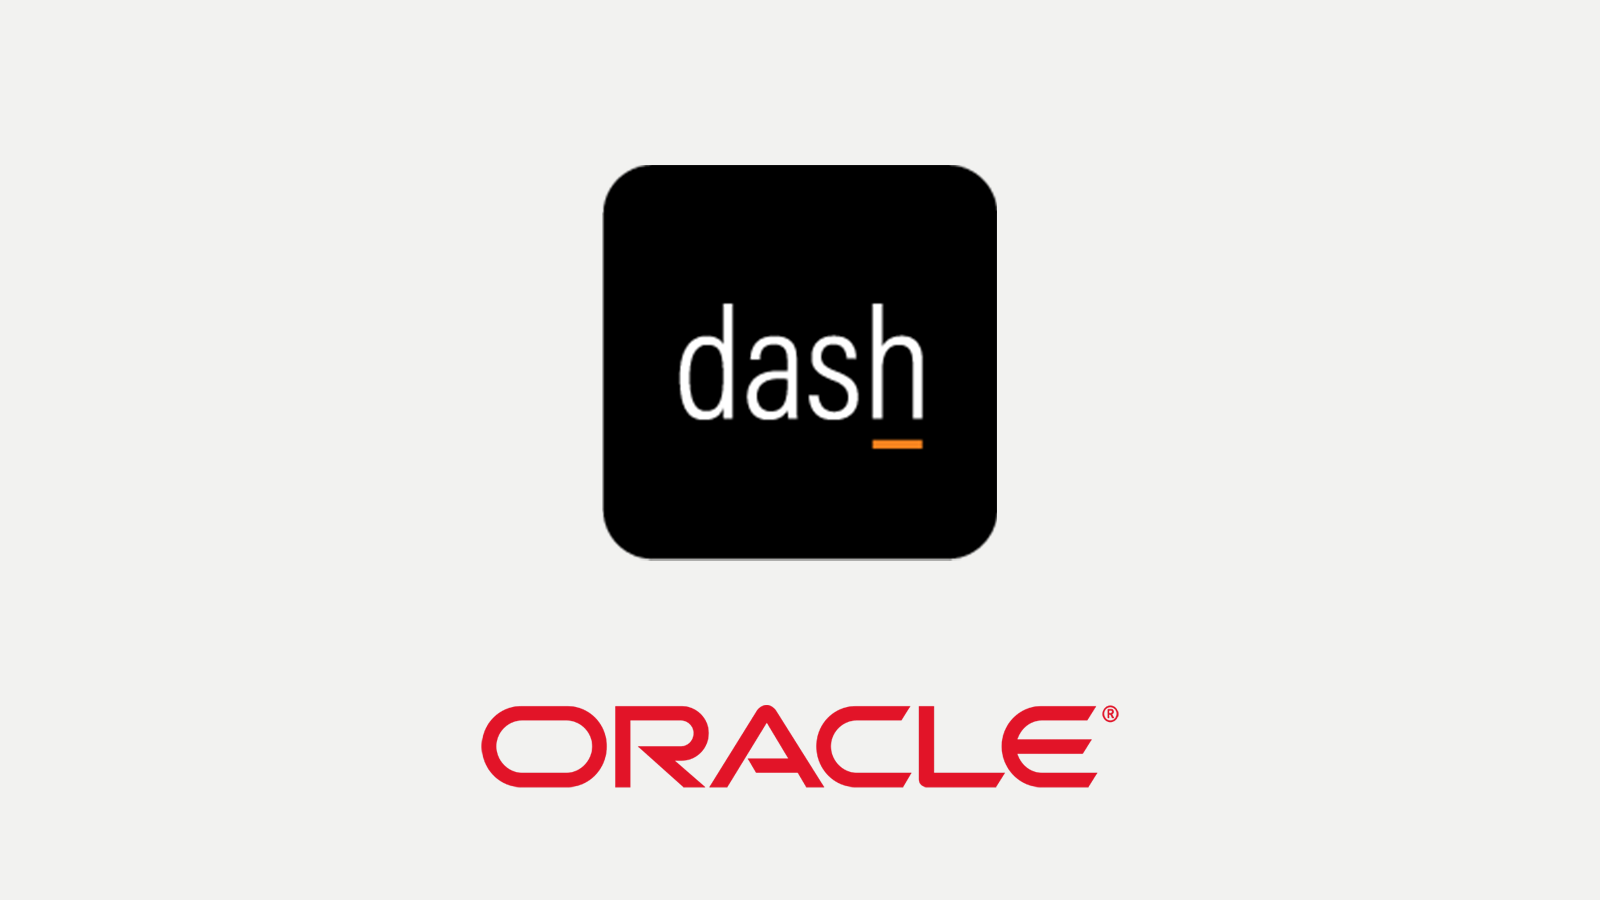 DASH - Oracle logos